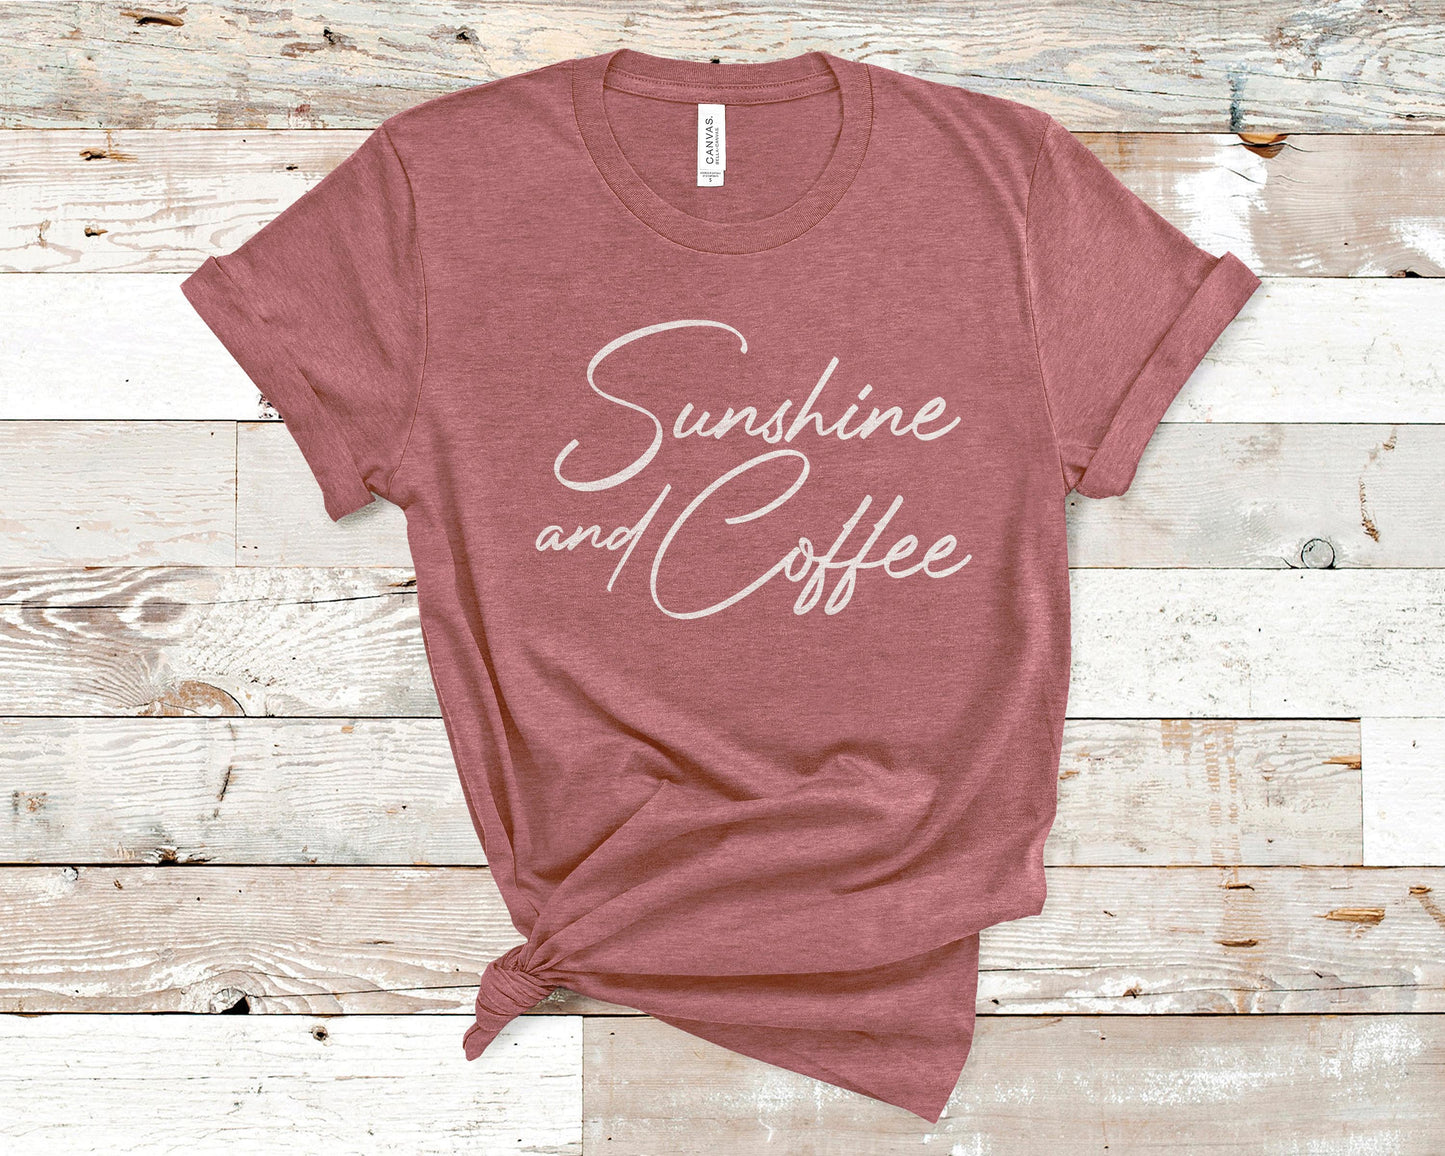 Sunshine and Coffee - Coffee Lovers